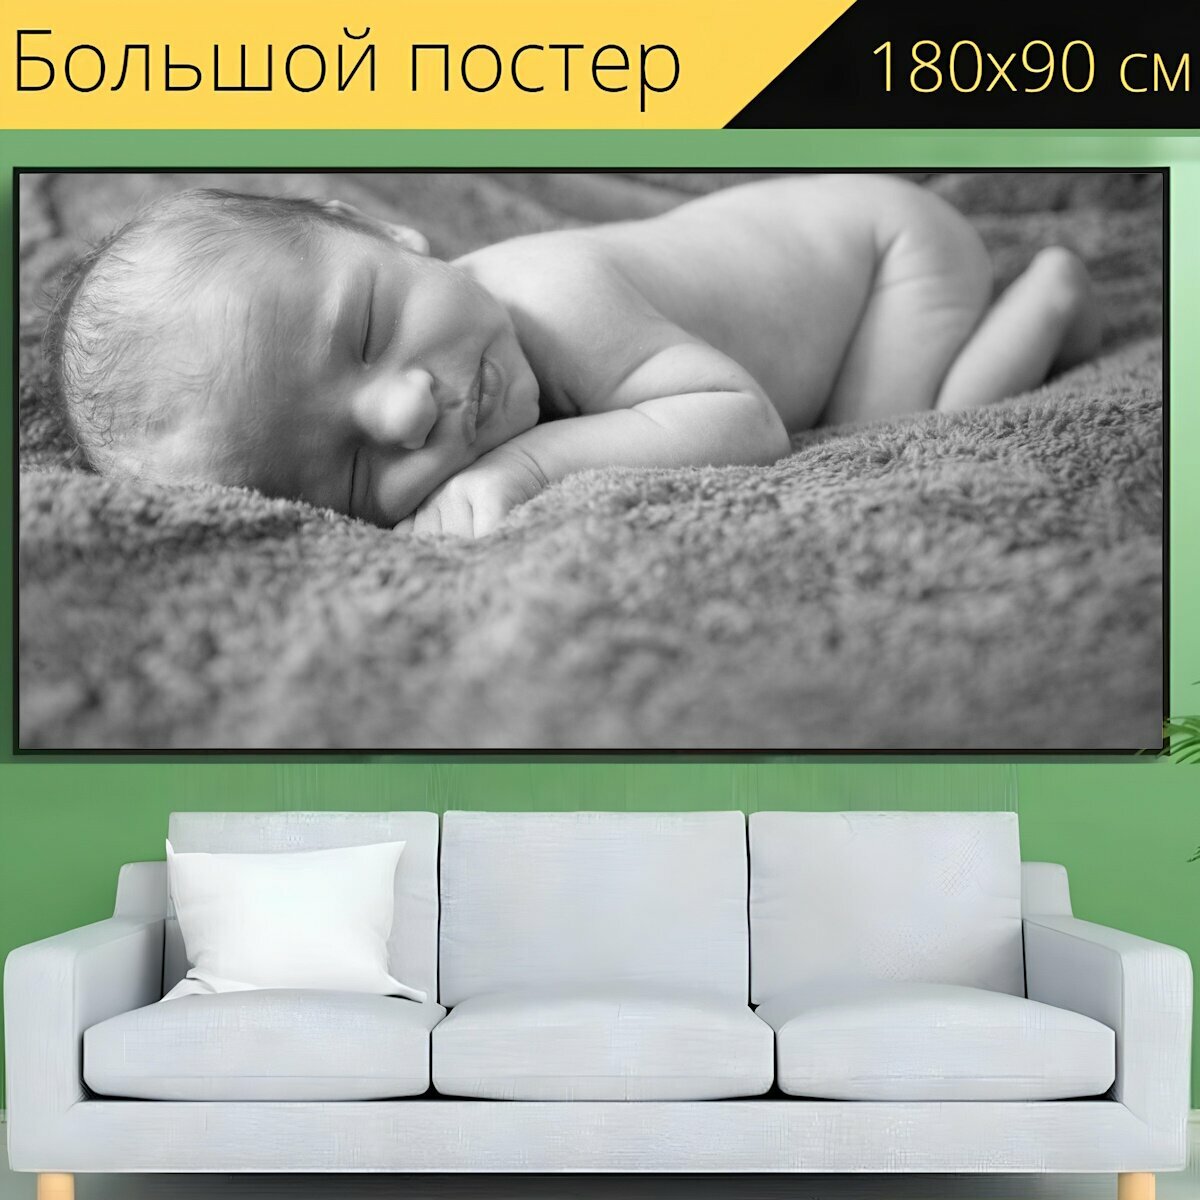 Большой постер "Новорожденный, детка, младенец" 180 x 90 см. для интерьера